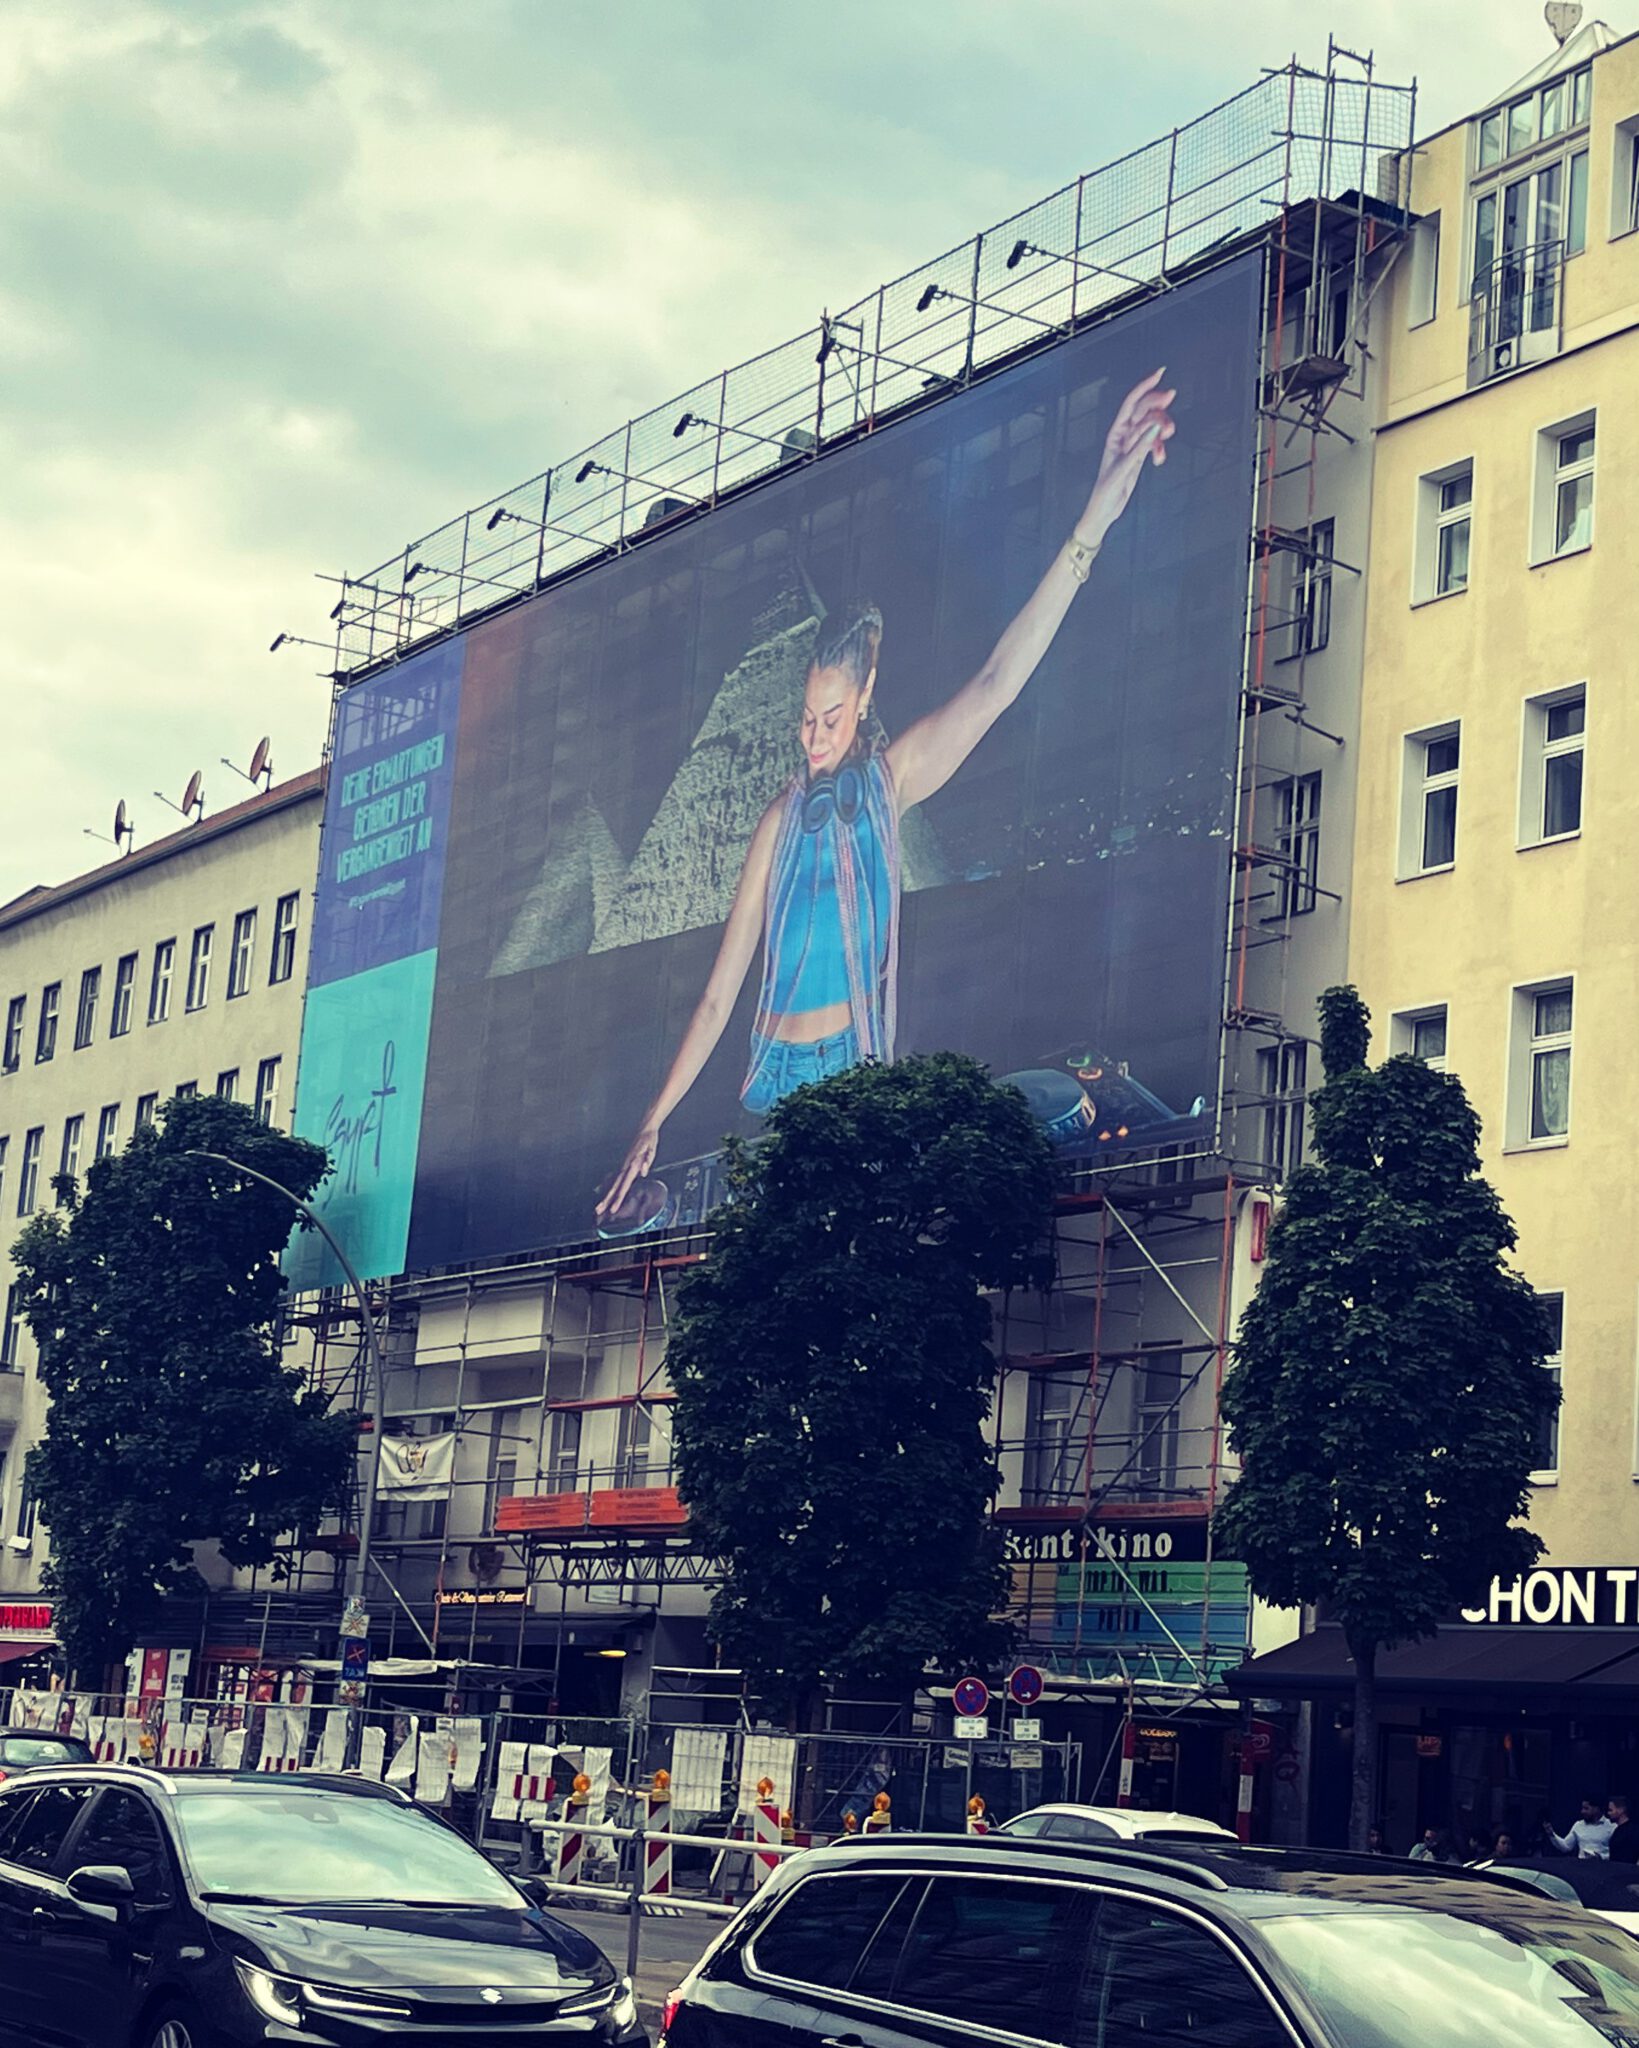 Aggro Werbung in der Innenstadt